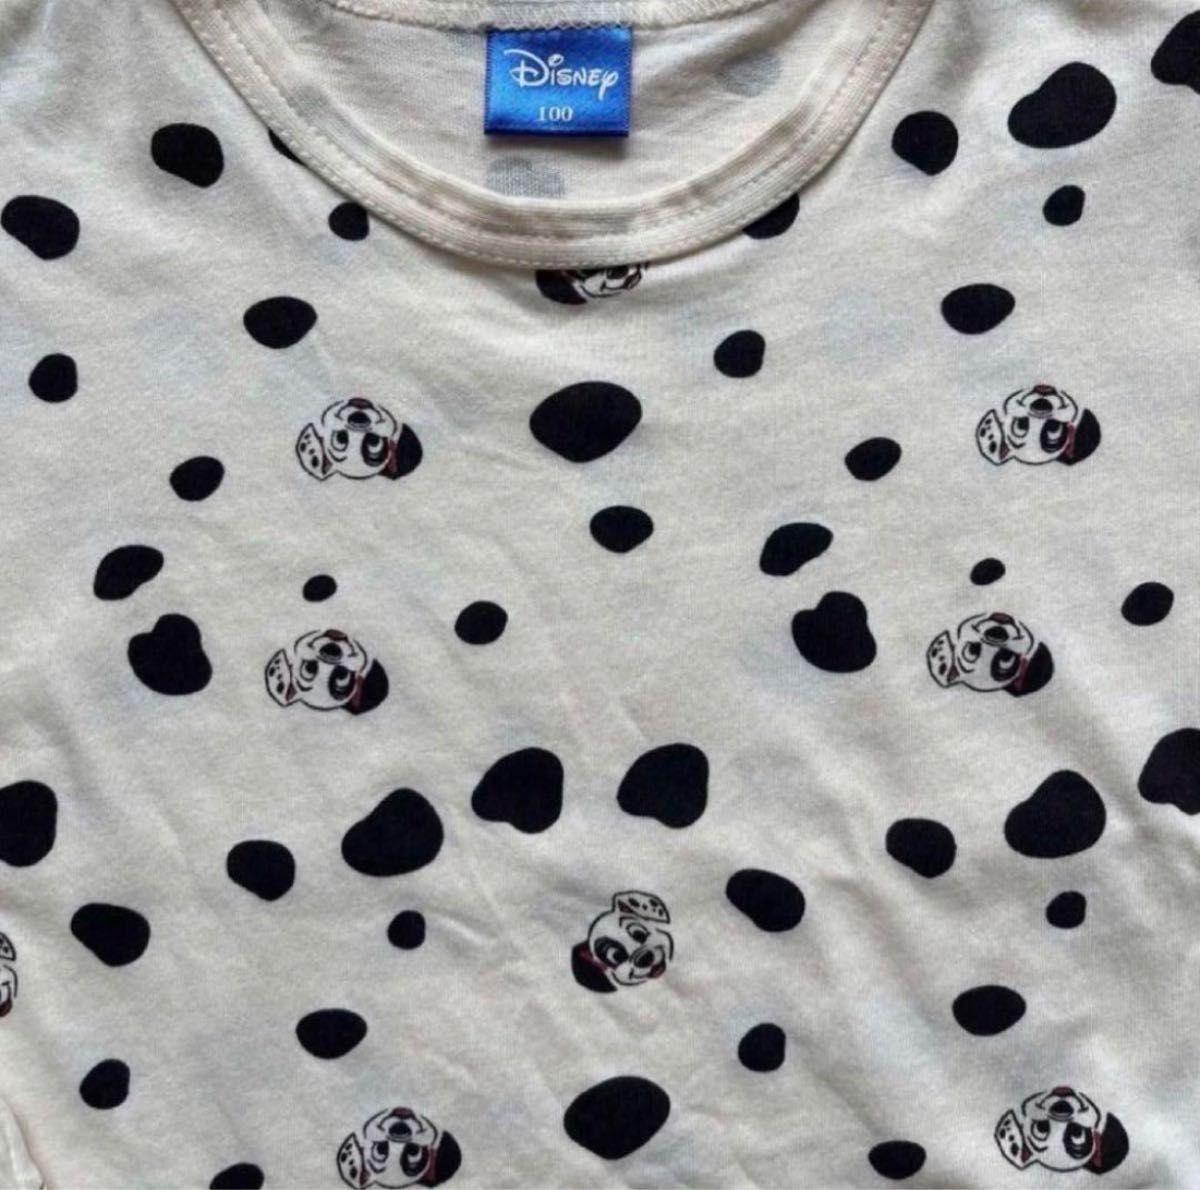 【Disney】ディズニー プーさん☆101匹わんちゃん セットアップ パジャマ Tシャツ ハーフパンツ キャラクター100